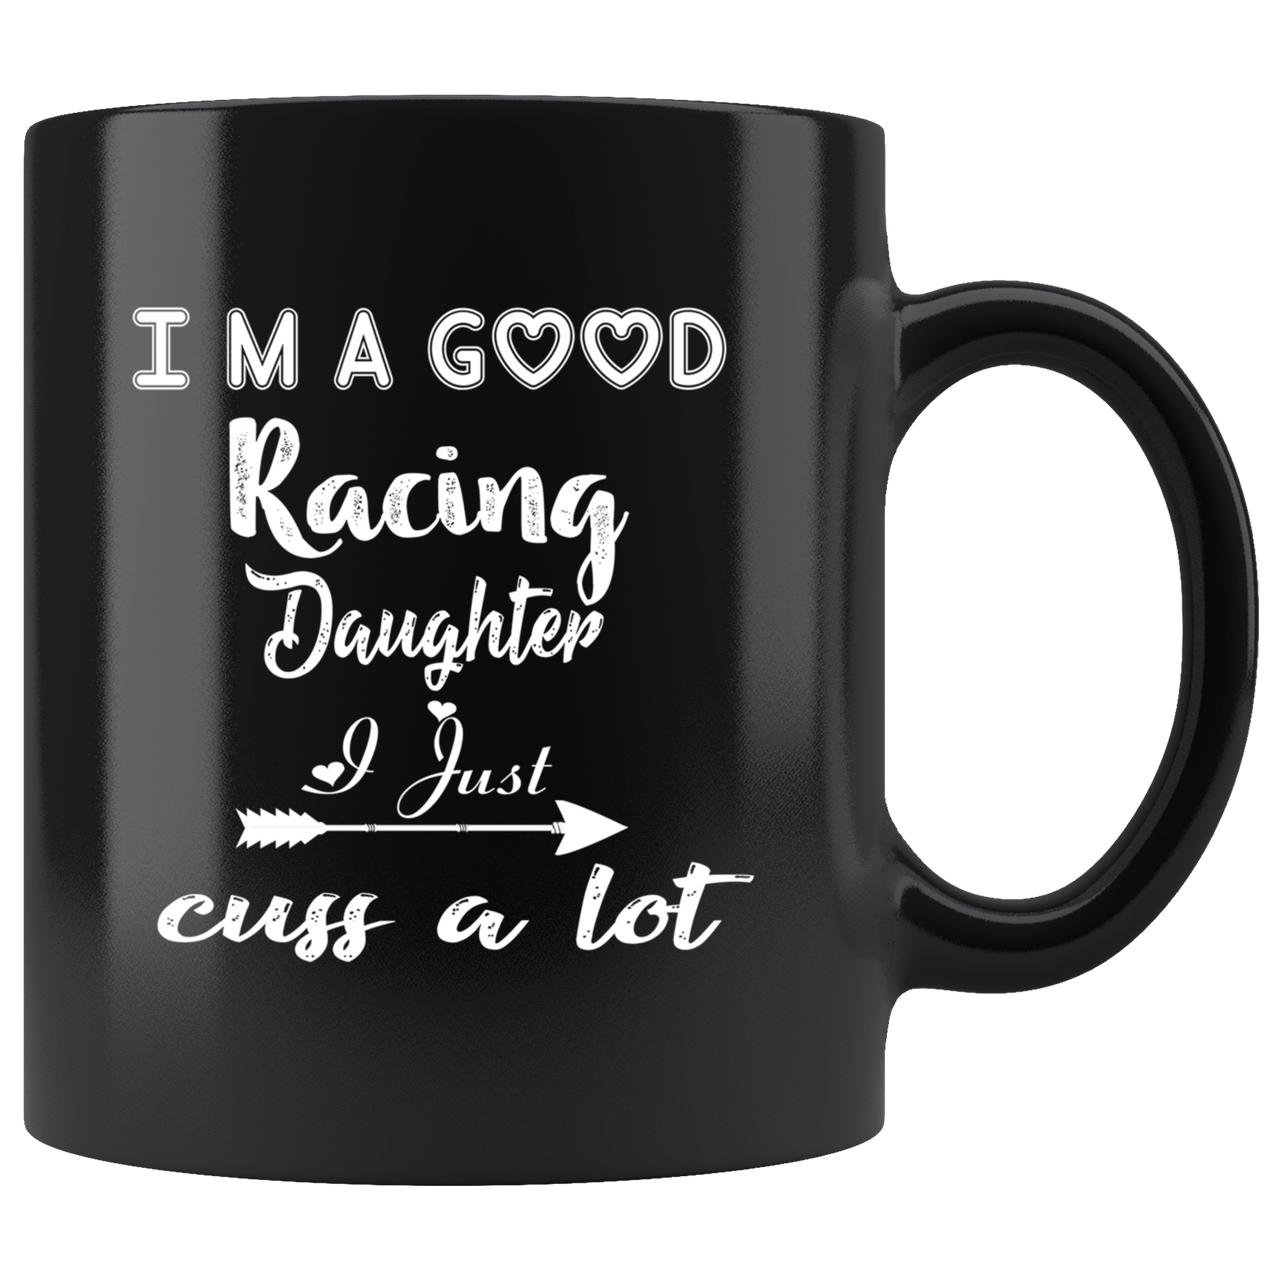 I'm A Good Racing Daughter I Just Cuss A Lot Mug!